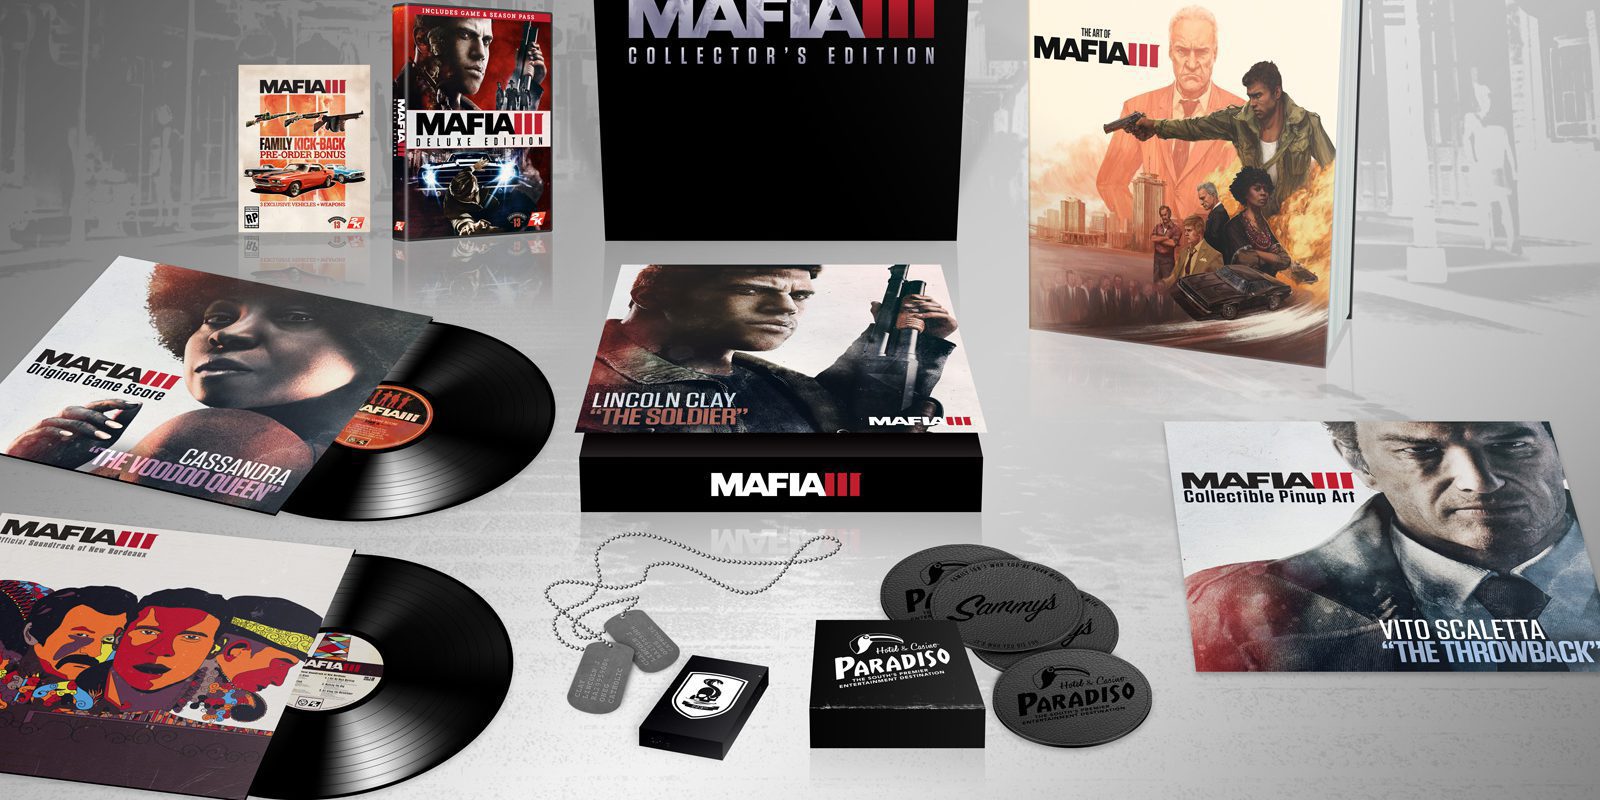 'Mafia III' tendrá una edición de coleccionistas muy completa